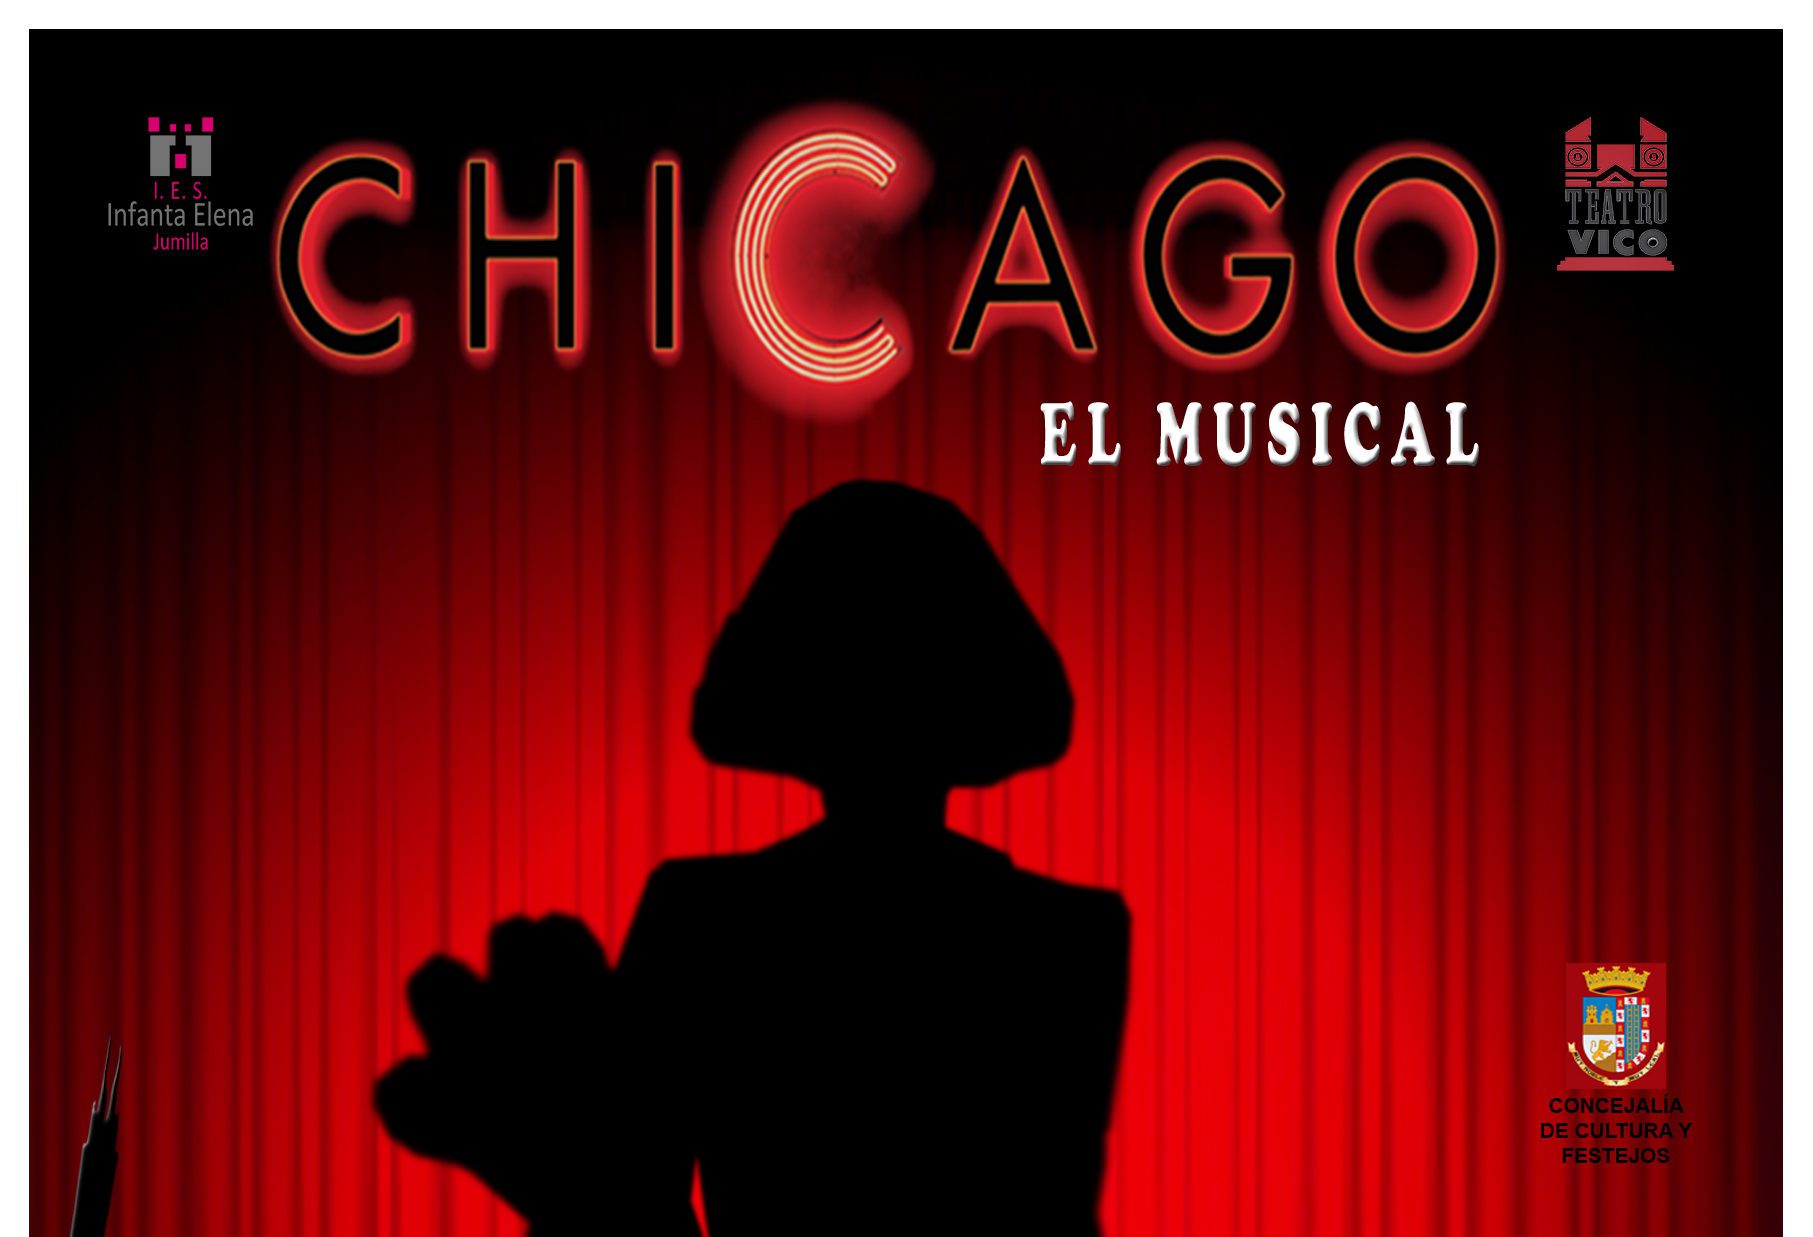 “Chicago”, el musical del Infanta Elena ambientado en los años 20